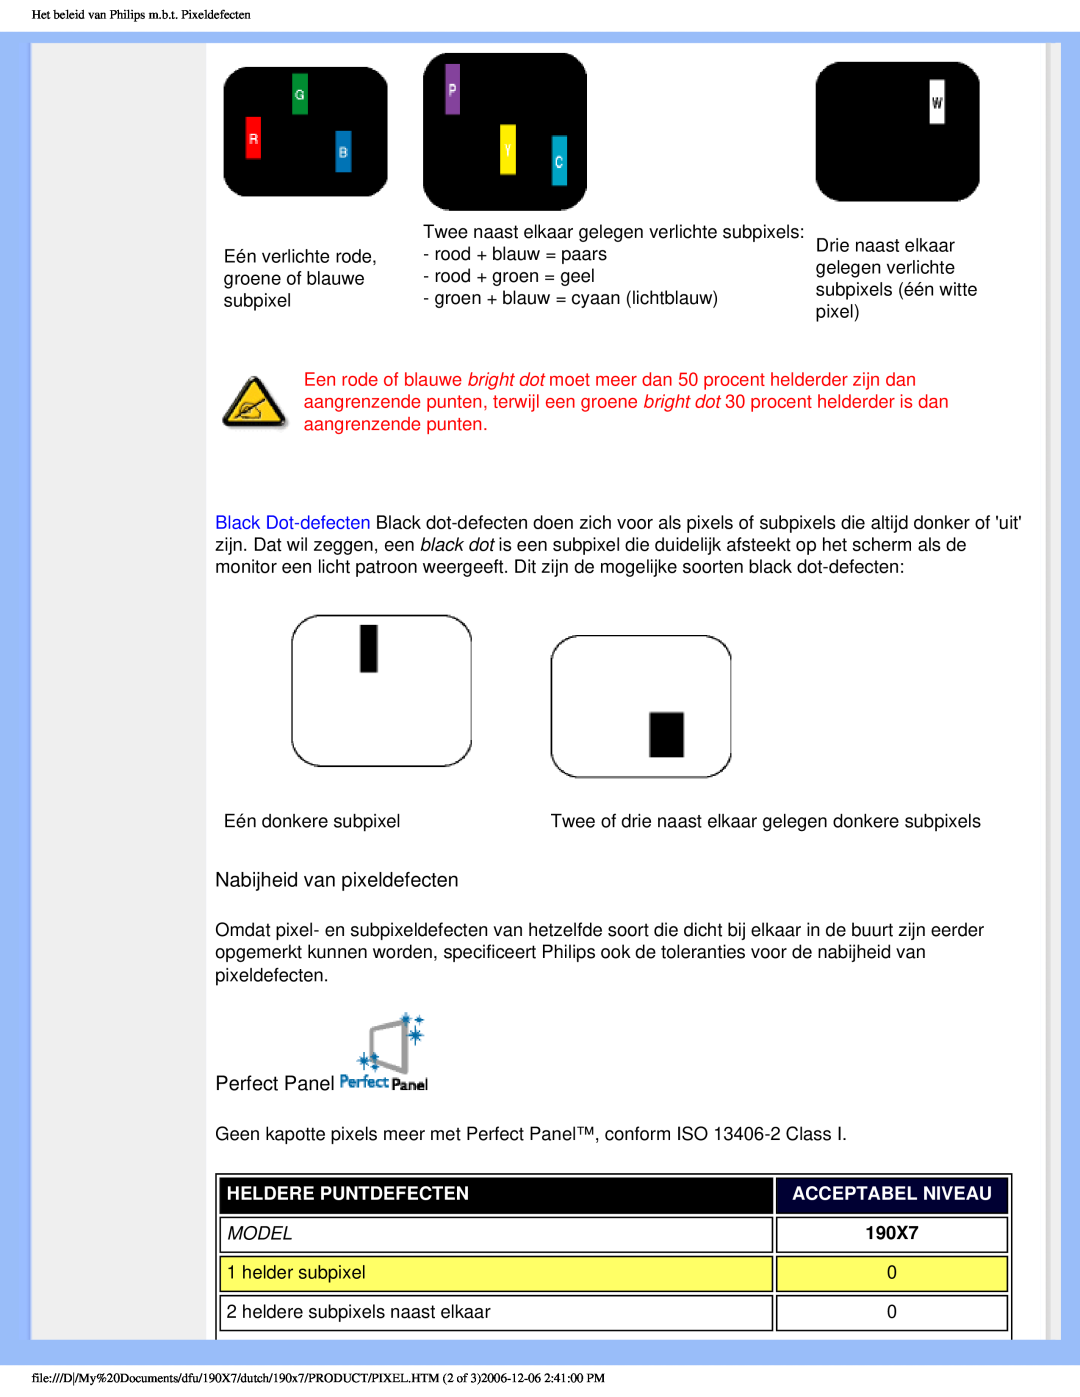 Philips 190X7 user manual Nabijheid van pixeldefecten, Perfect Panel, Heldere Puntdefecten, Acceptabel Niveau 